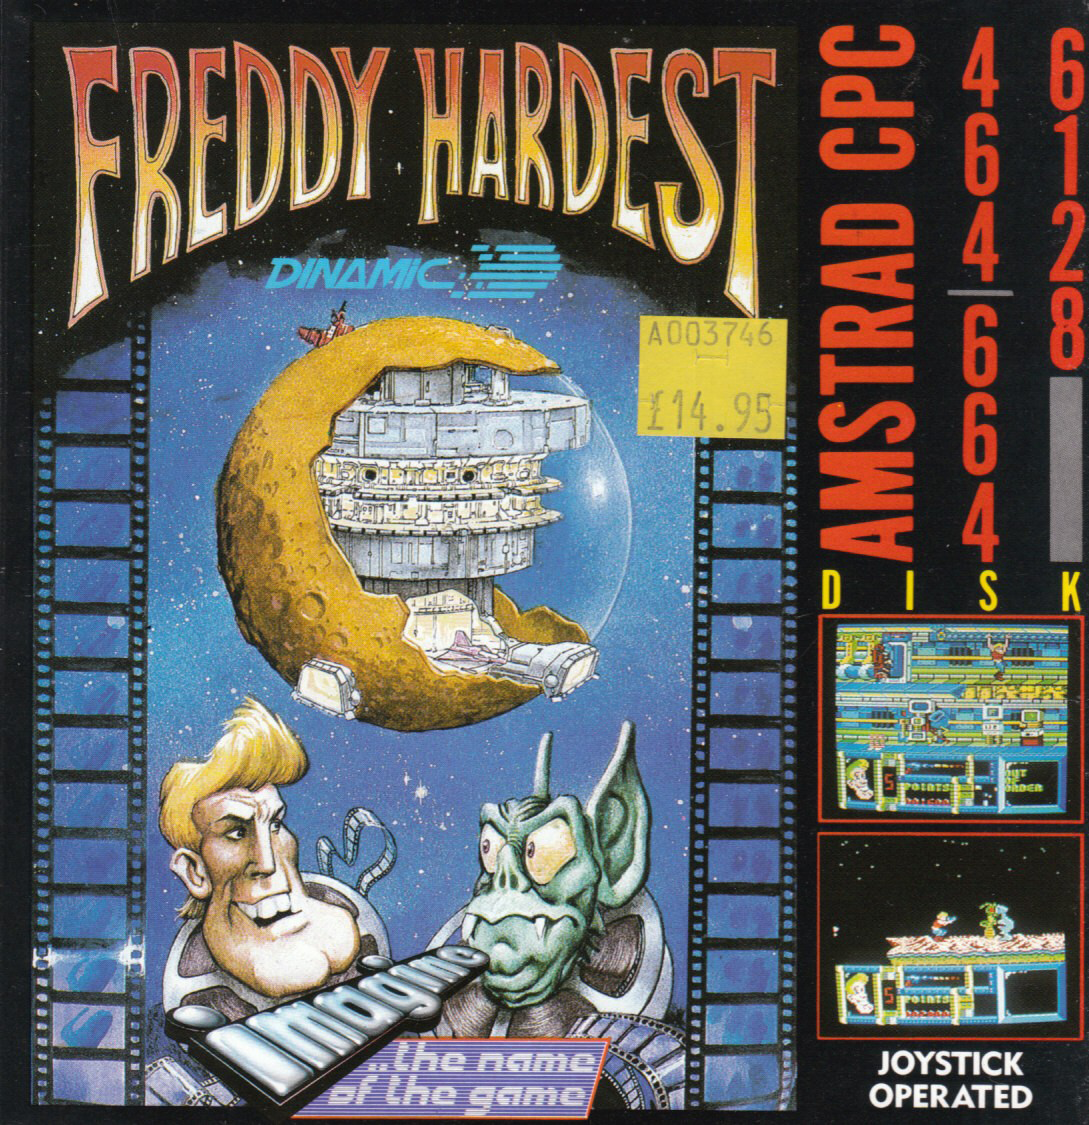 Image of Freddy Hardest